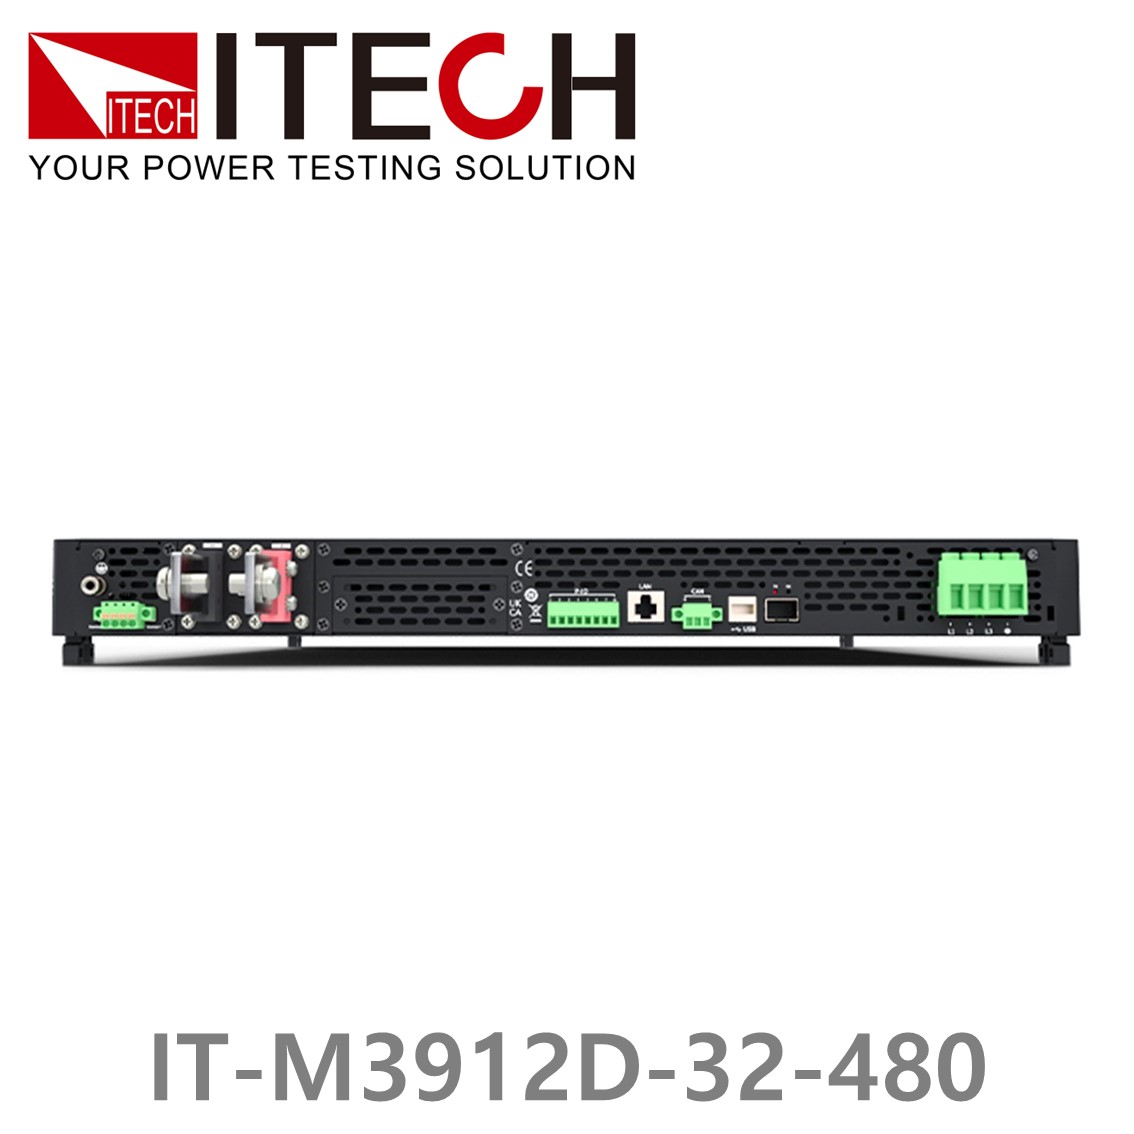 [ ITECH ] IT-M3912D-32-480 양방향 프로그래머블 DC전원공급기, DC파워서플라이